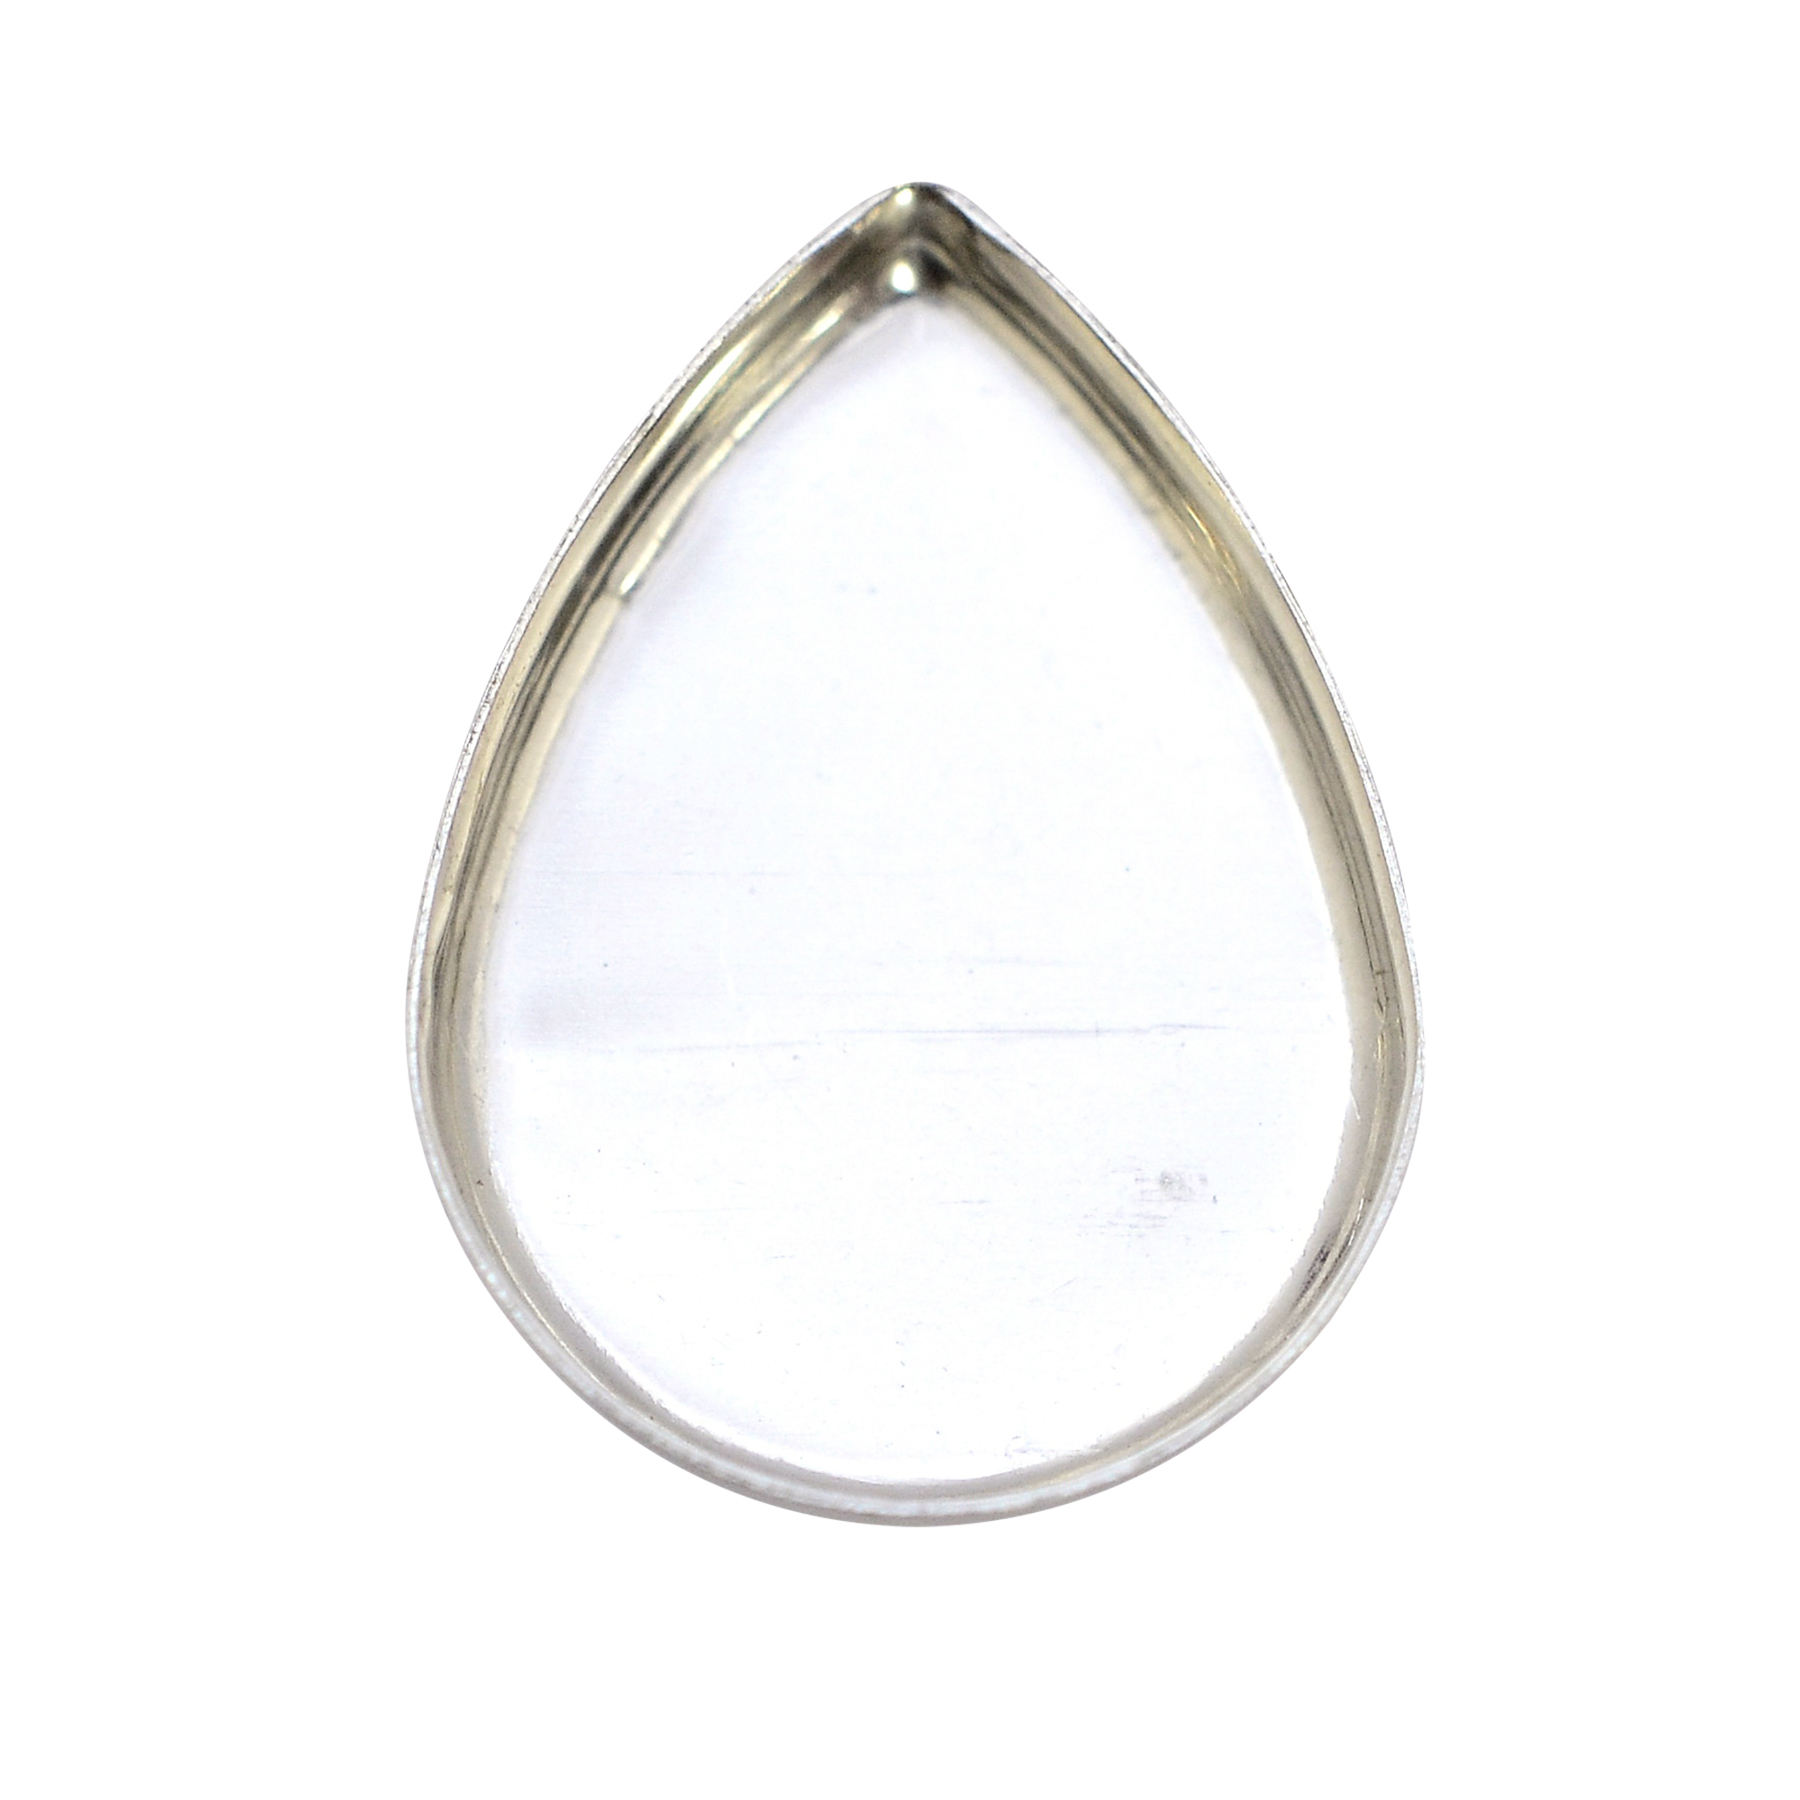 1/4 Fine Silver Bezel Wire 22ga - Santa Fe Jewelers Supply : Santa Fe  Jewelers Supply